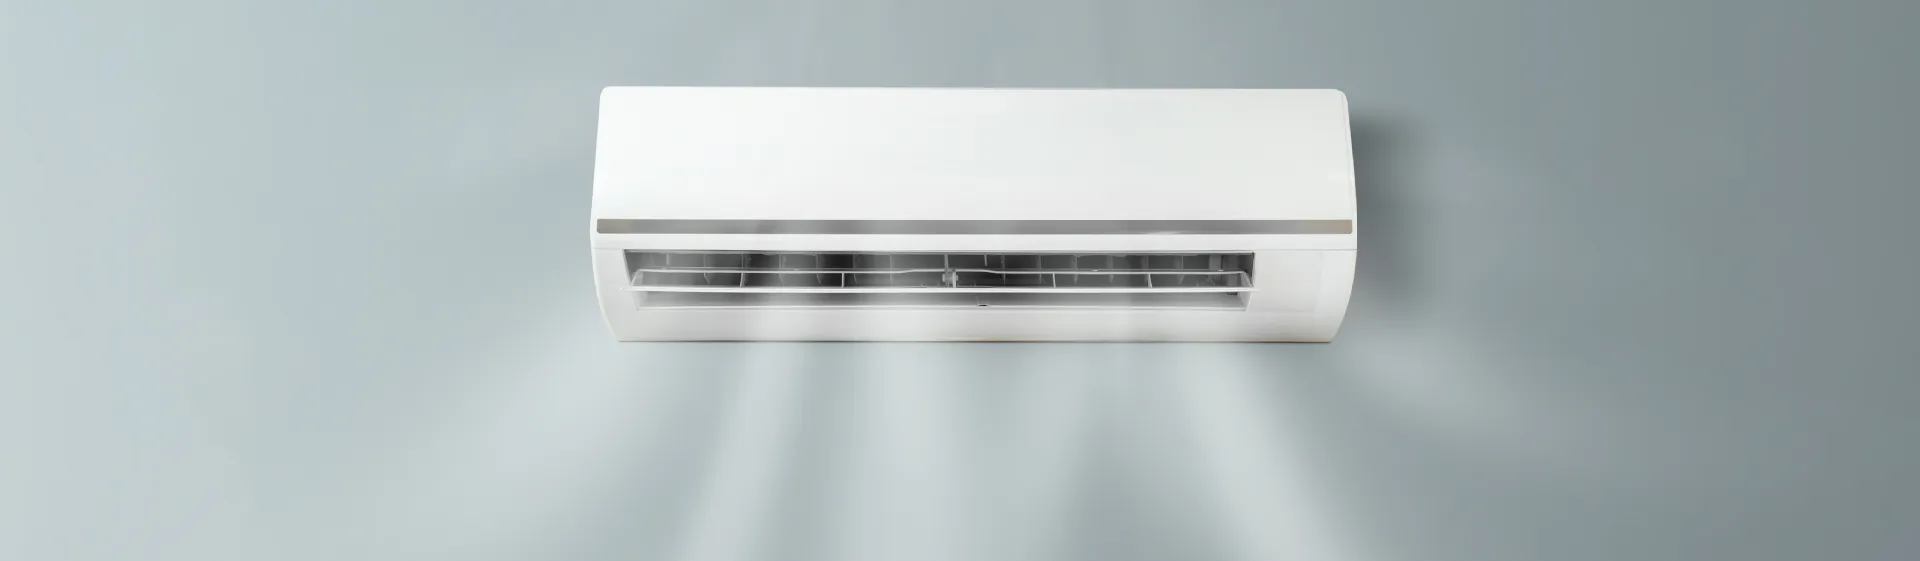 BTUs por metro quadrado: calcule e compre o ar-condicionado correto